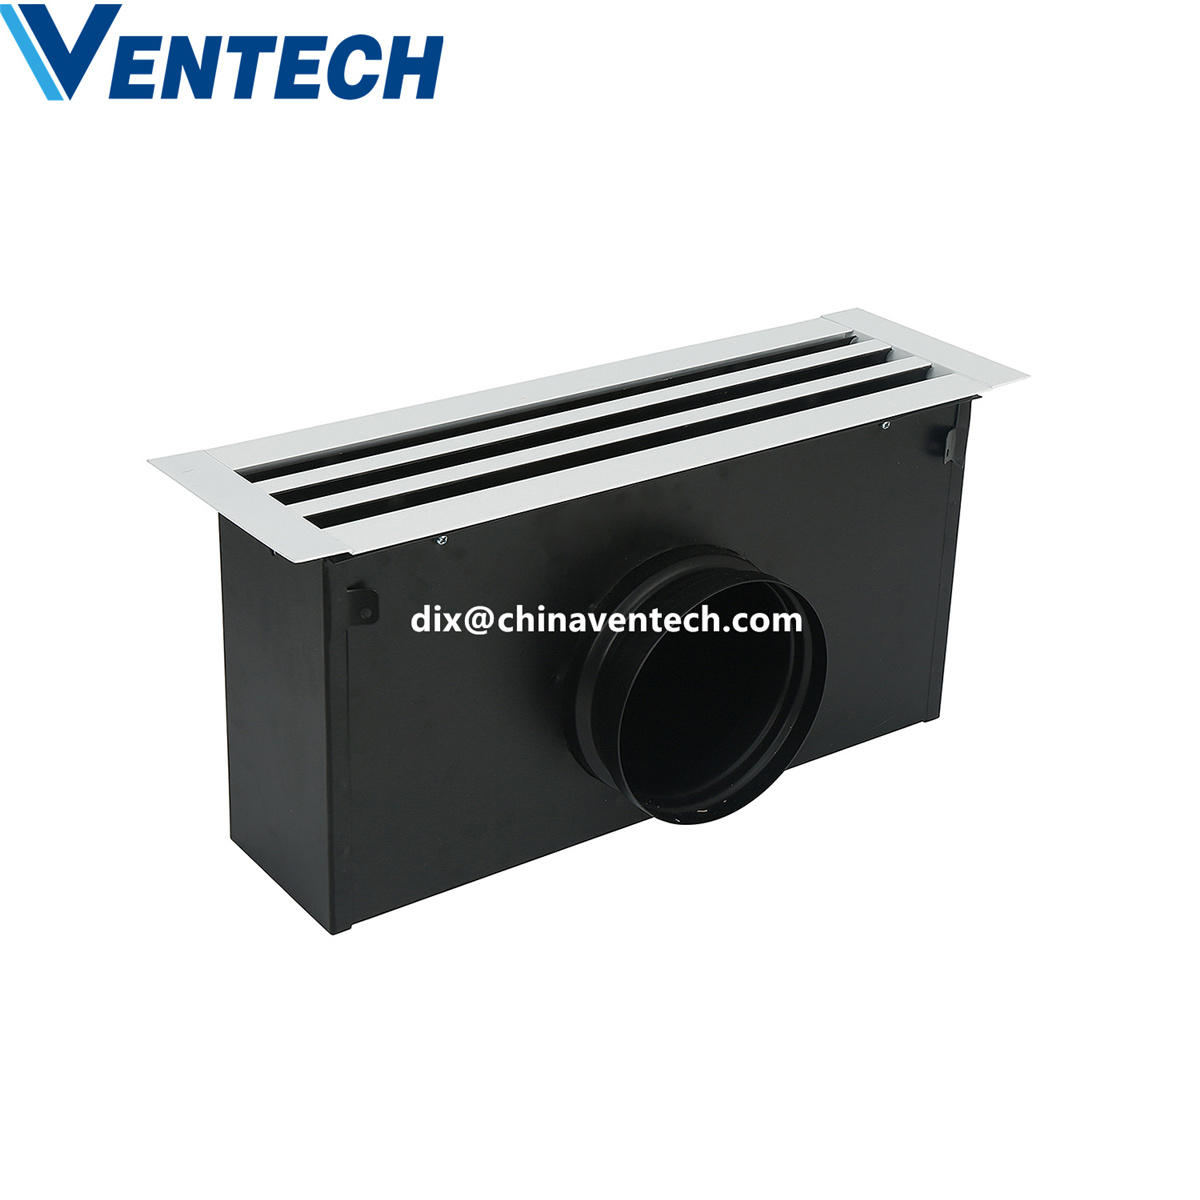 Hvac fresh air ceiling plenum box sizing supply air ventilation linear slot diffuser